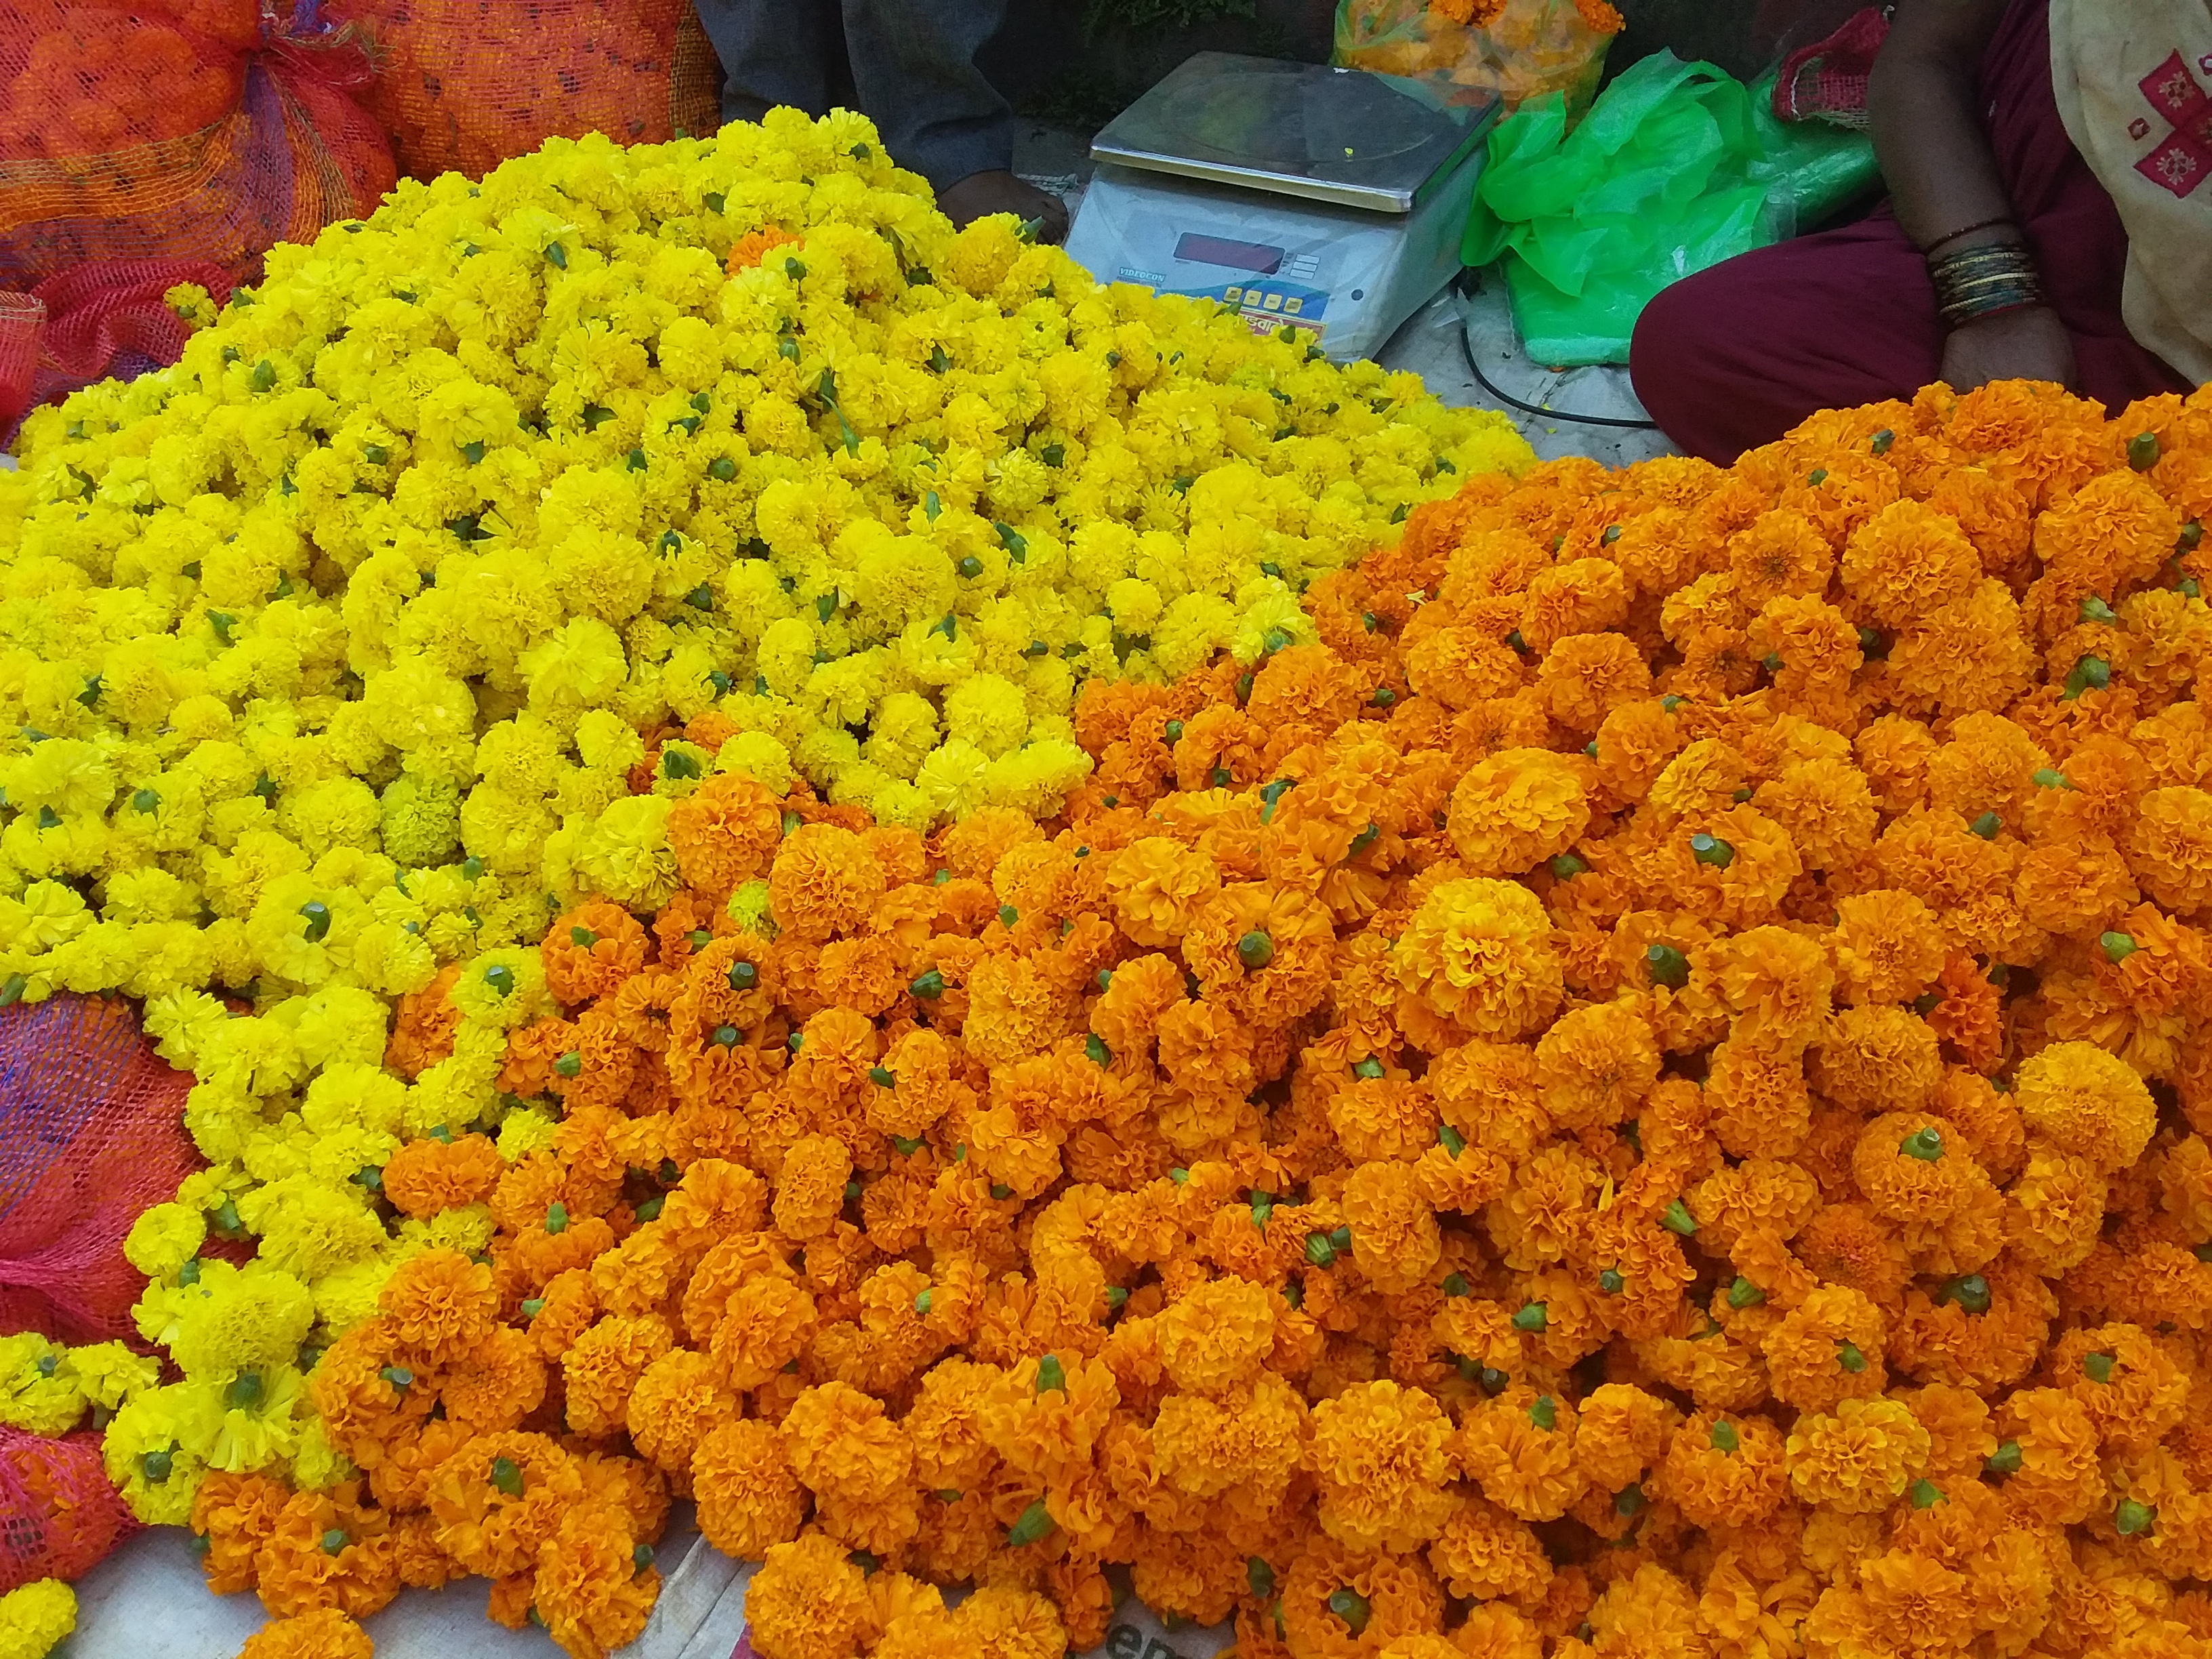 लक्ष्मीपूजनासाठी झेंडूच्या फुलांची विक्री, सातारा, महाराष्ट्र